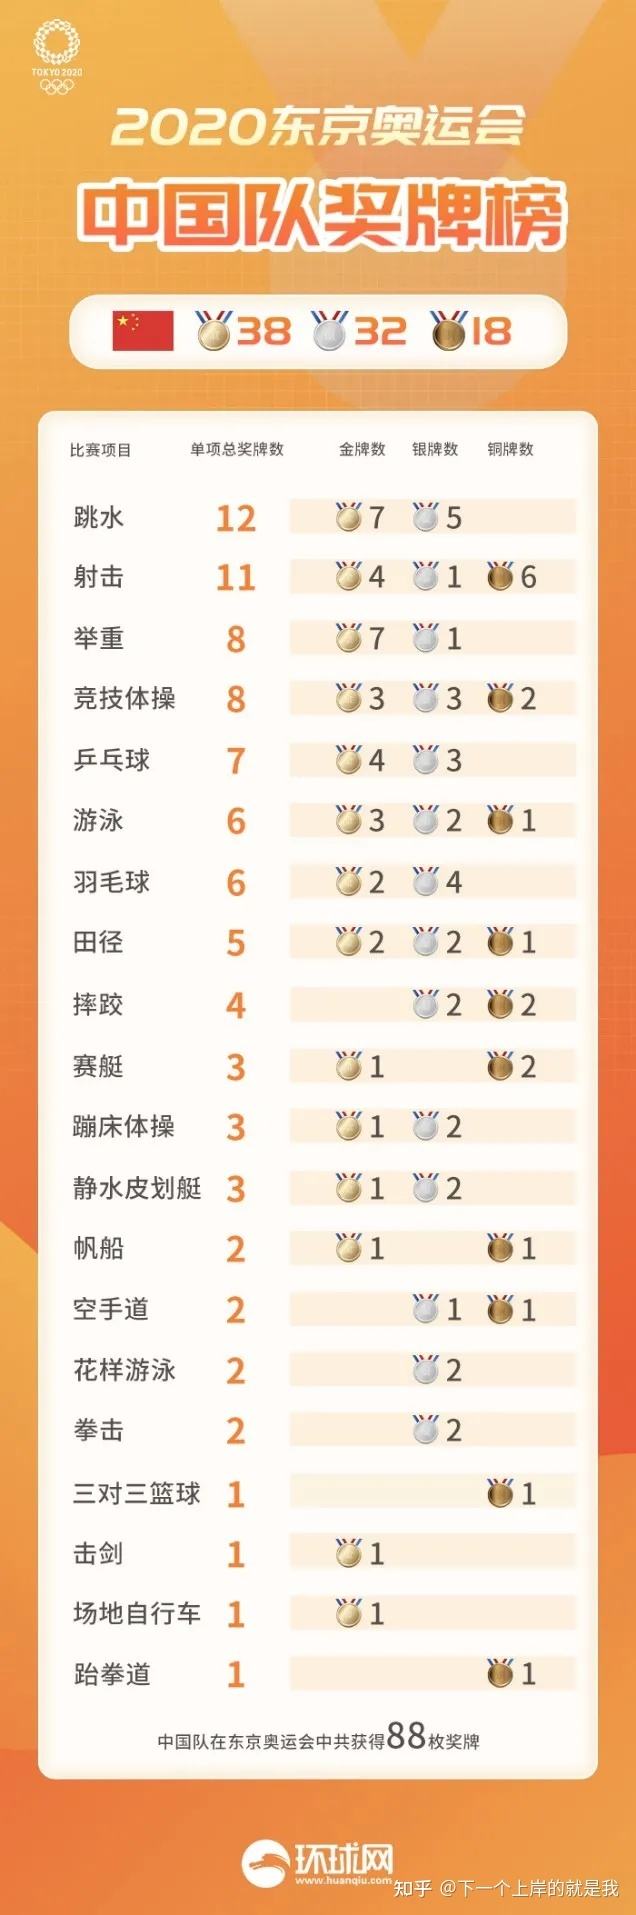 中国奥运金牌数_中国奥运金牌数最多是哪一届